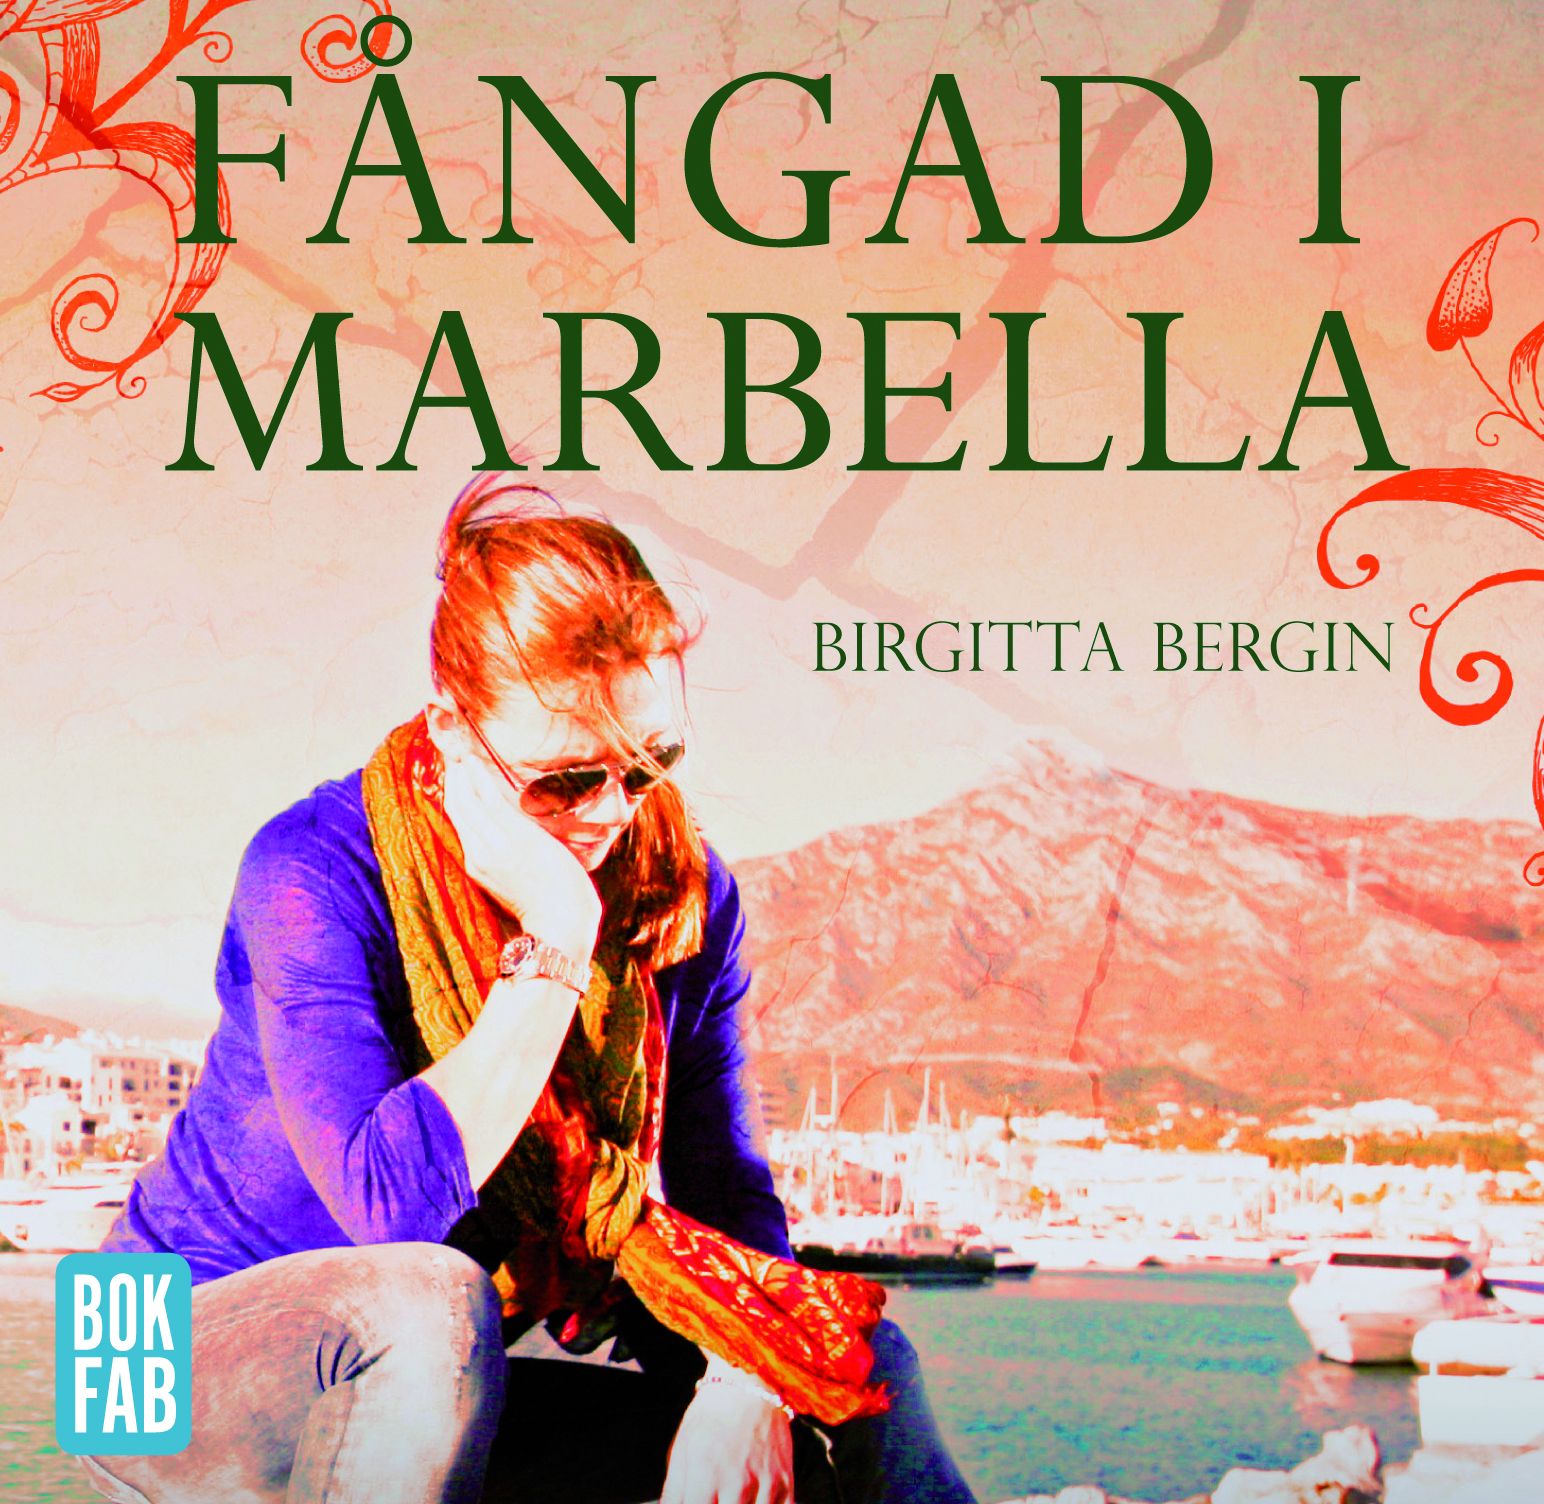 Fångad i Marbella, audiobook by Birgitta Bergin